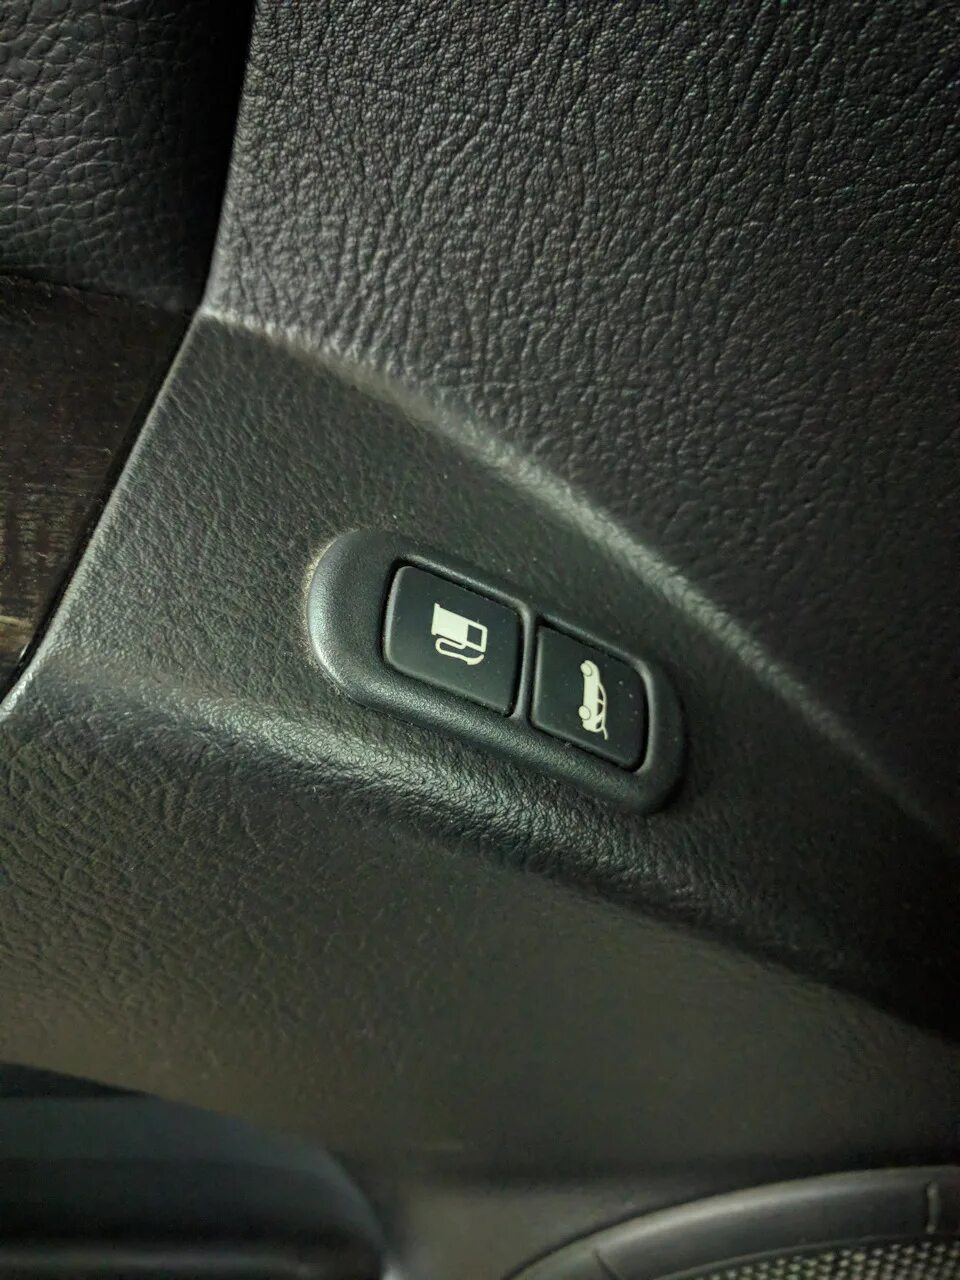 Кнопка открытия бензобака Kia Sportage 4. Kia Ceed кнопка открывания бака. Opel Astra 2013 кнопка бензобака. Skoda Octavia кнопка открывания бака.